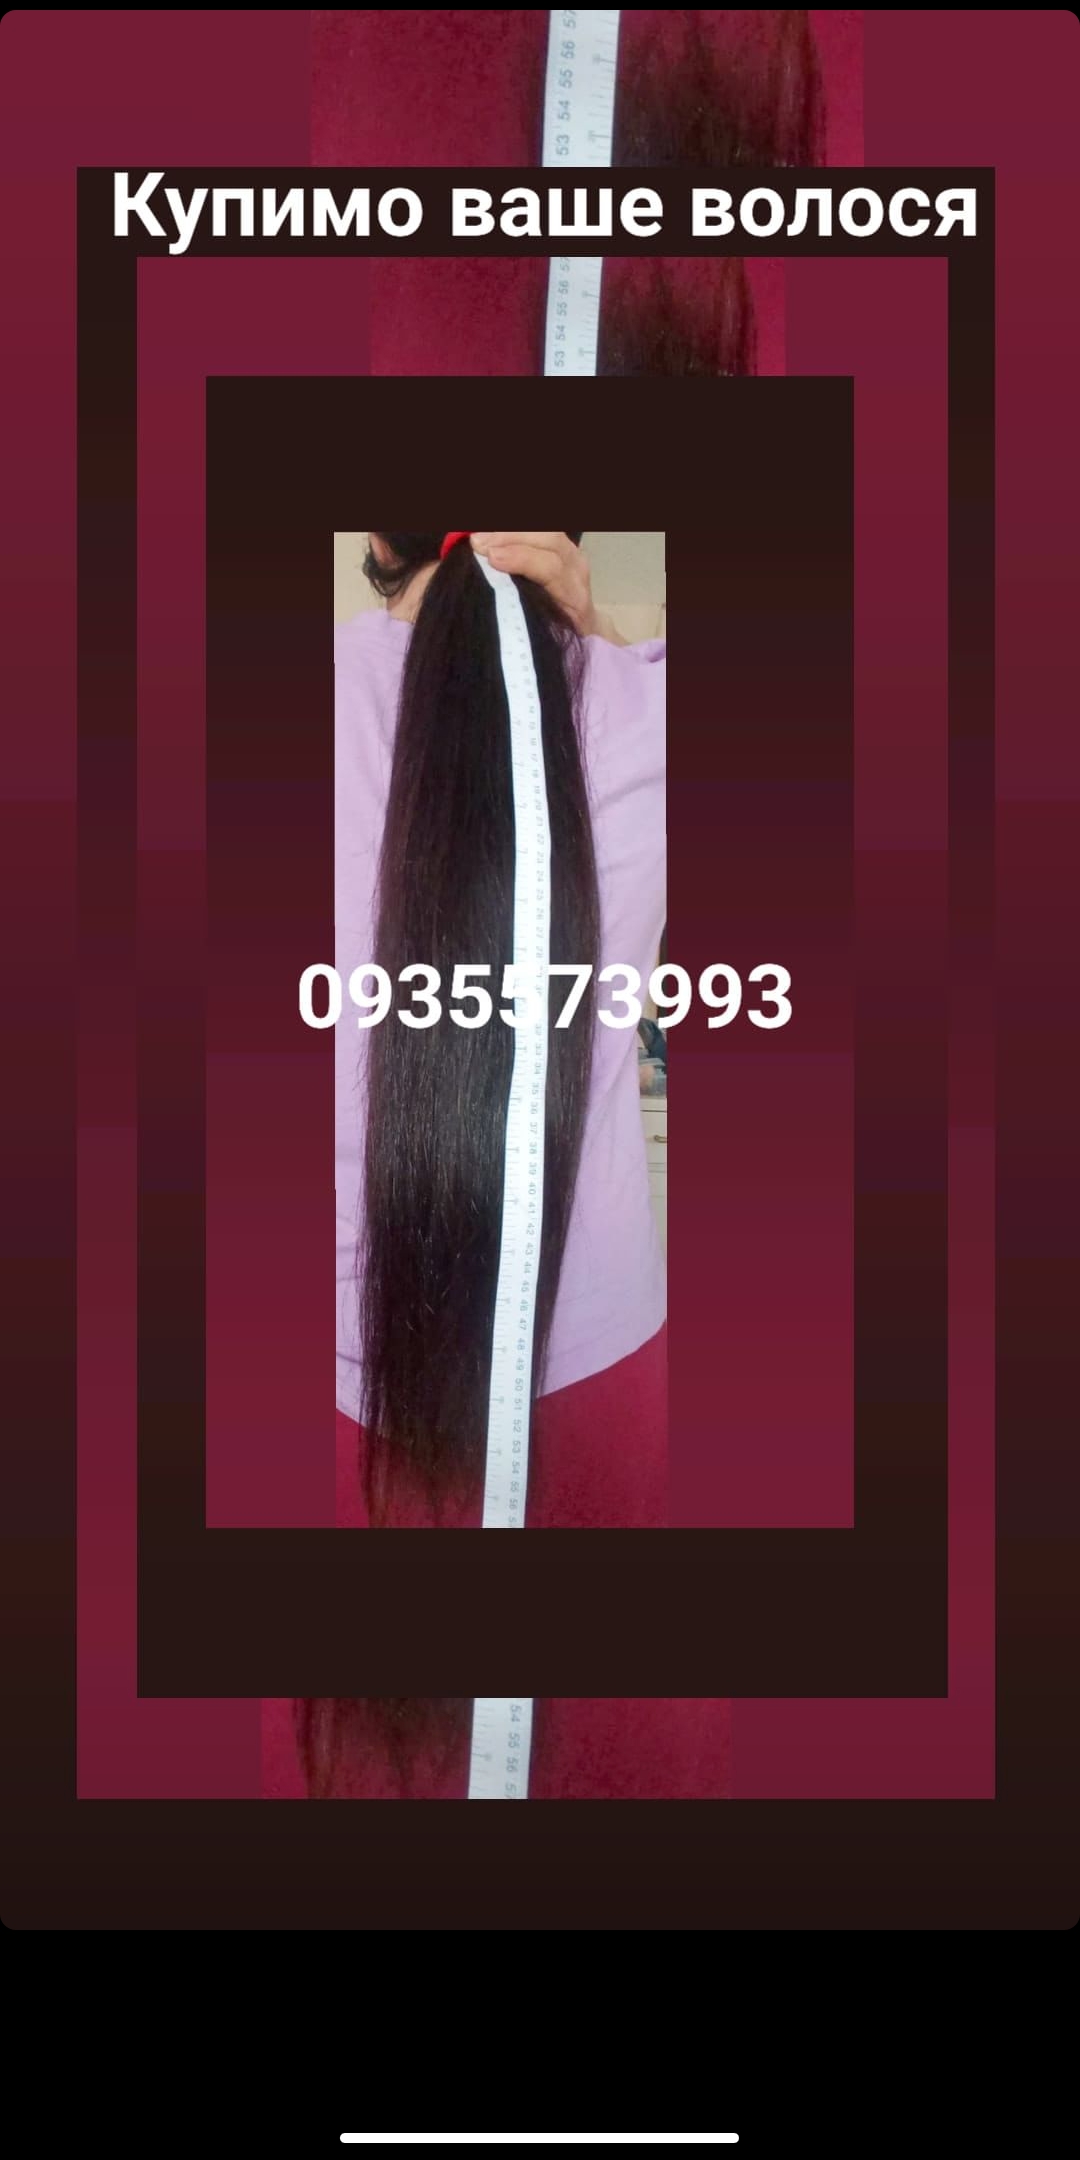 Продать волосы, куплю волосся -0935573993